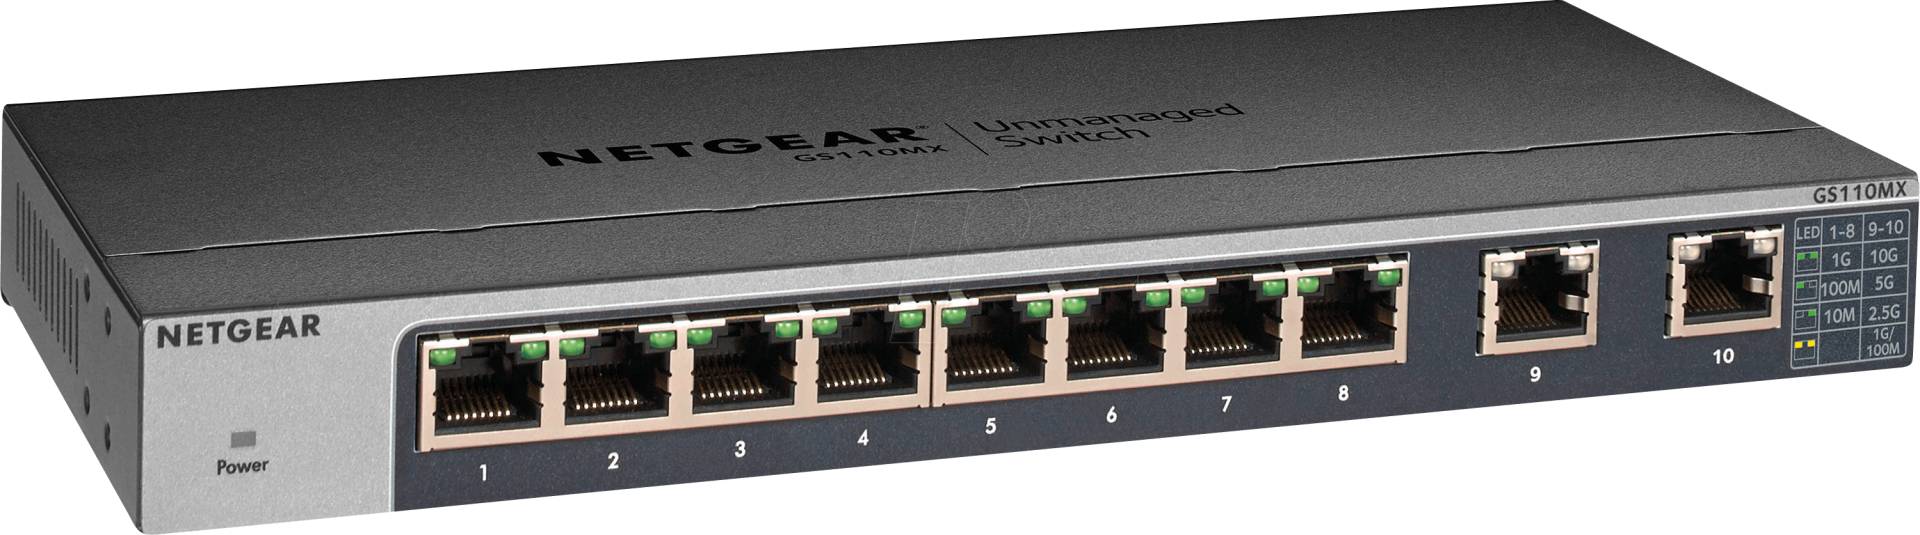 NETGEAR GS110MX - Switch, 8-Port, Gigabit Ethernet von Netgear